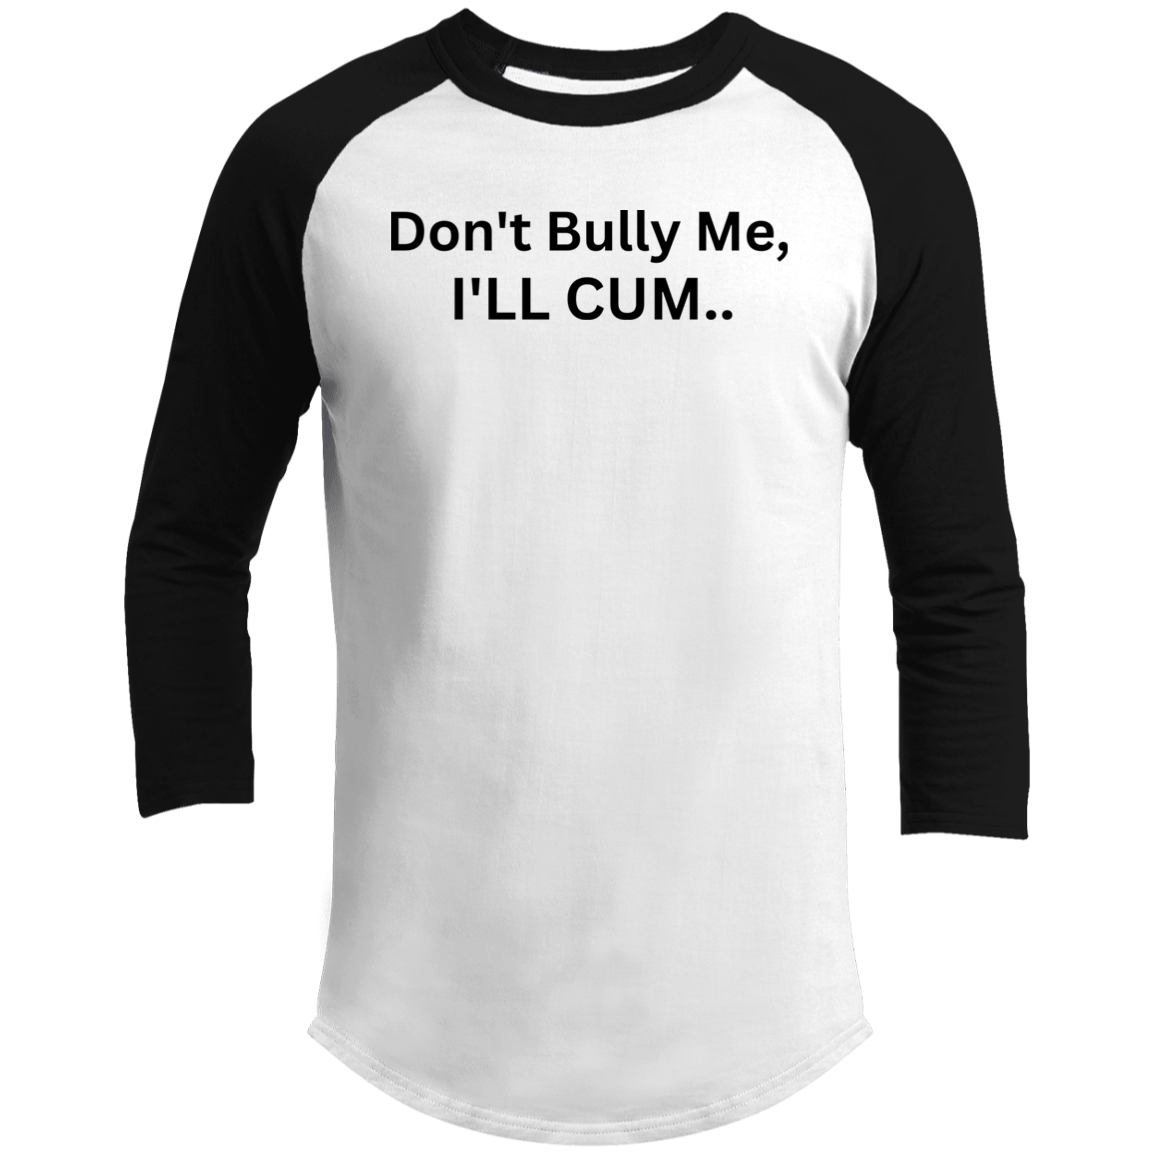 T-shirt Don't Bully Me 08i24i23 T200 3/4 Raglan Sleeve Shirt